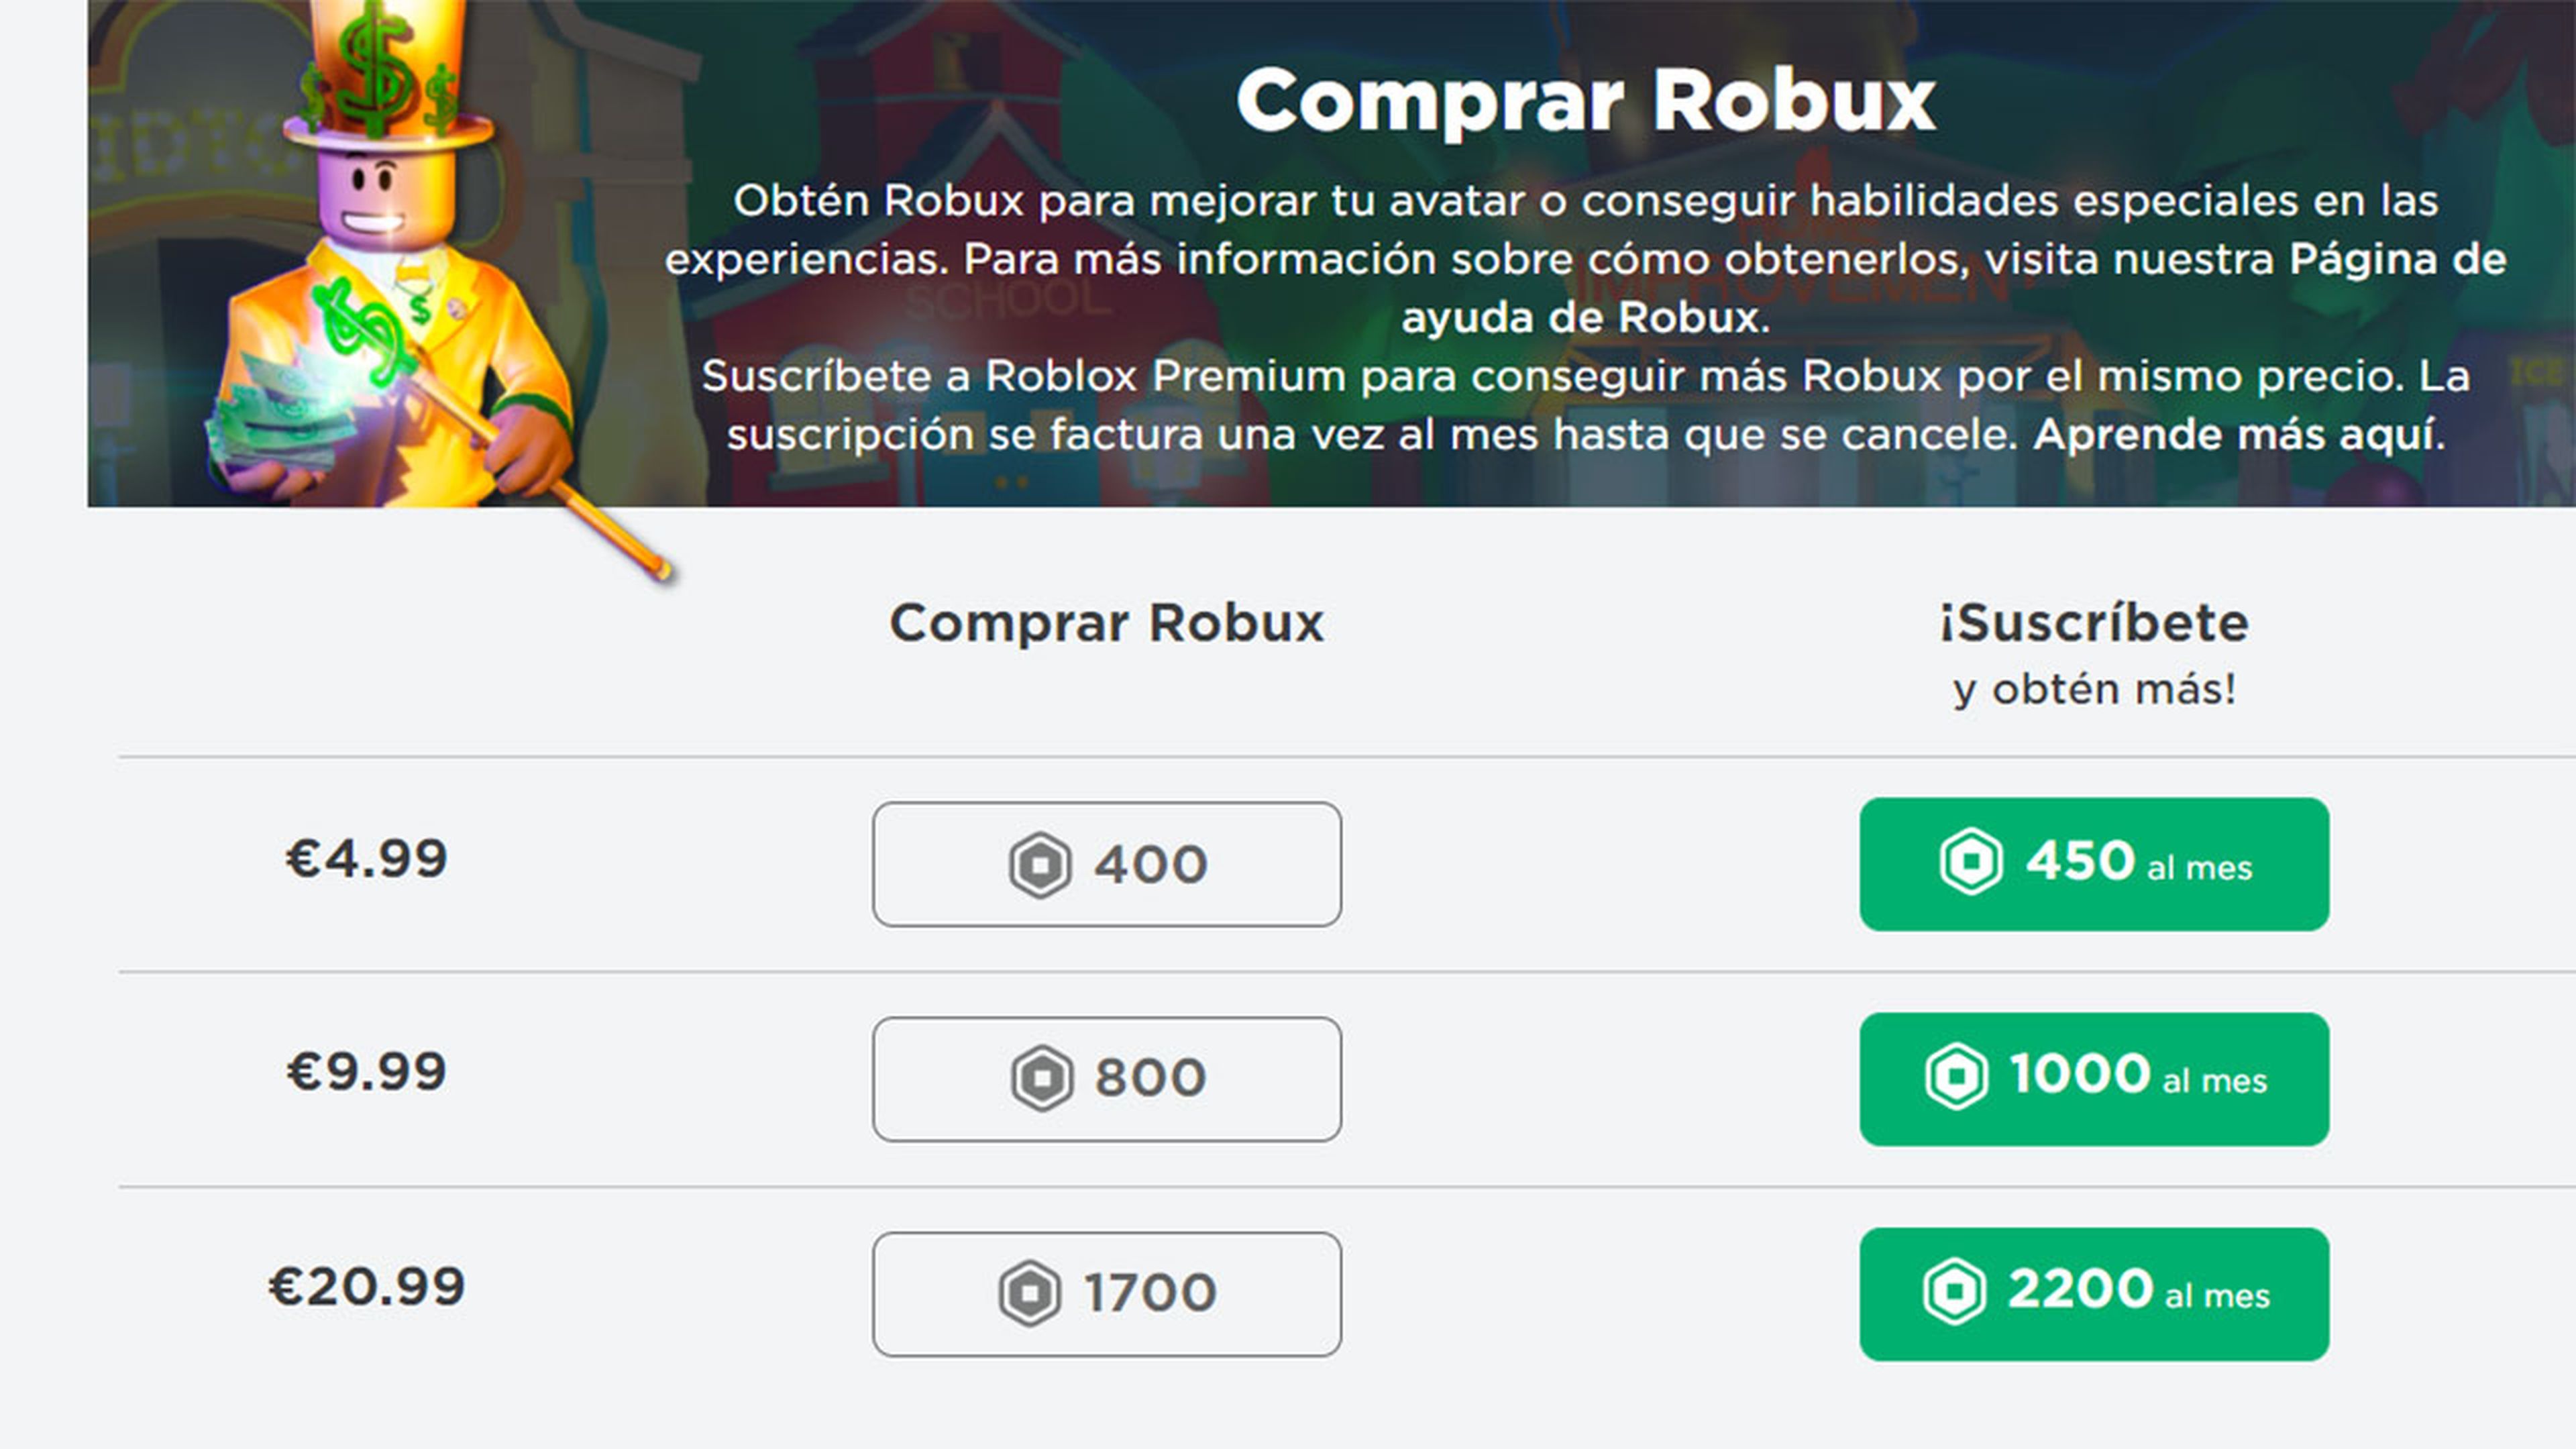 Todo de Roblox: Códigos y Trucos para conseguir robux gratis